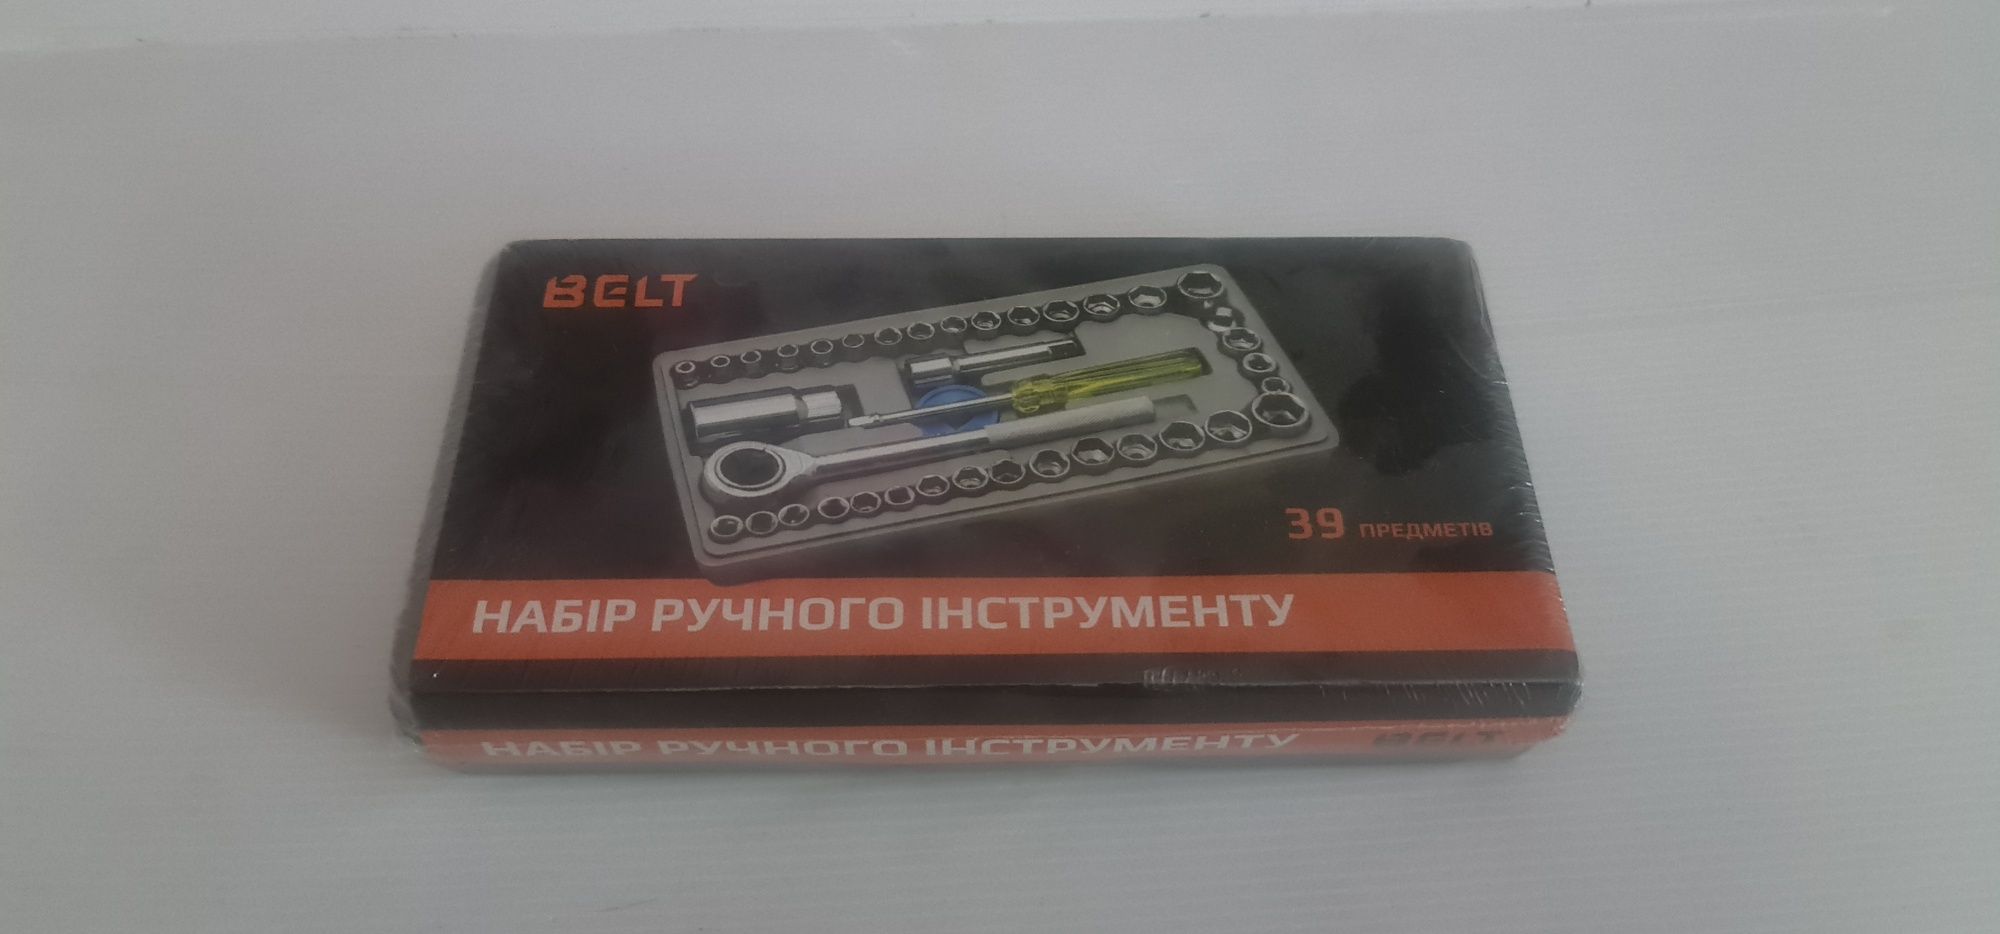 Набор ручного инструмента Belt